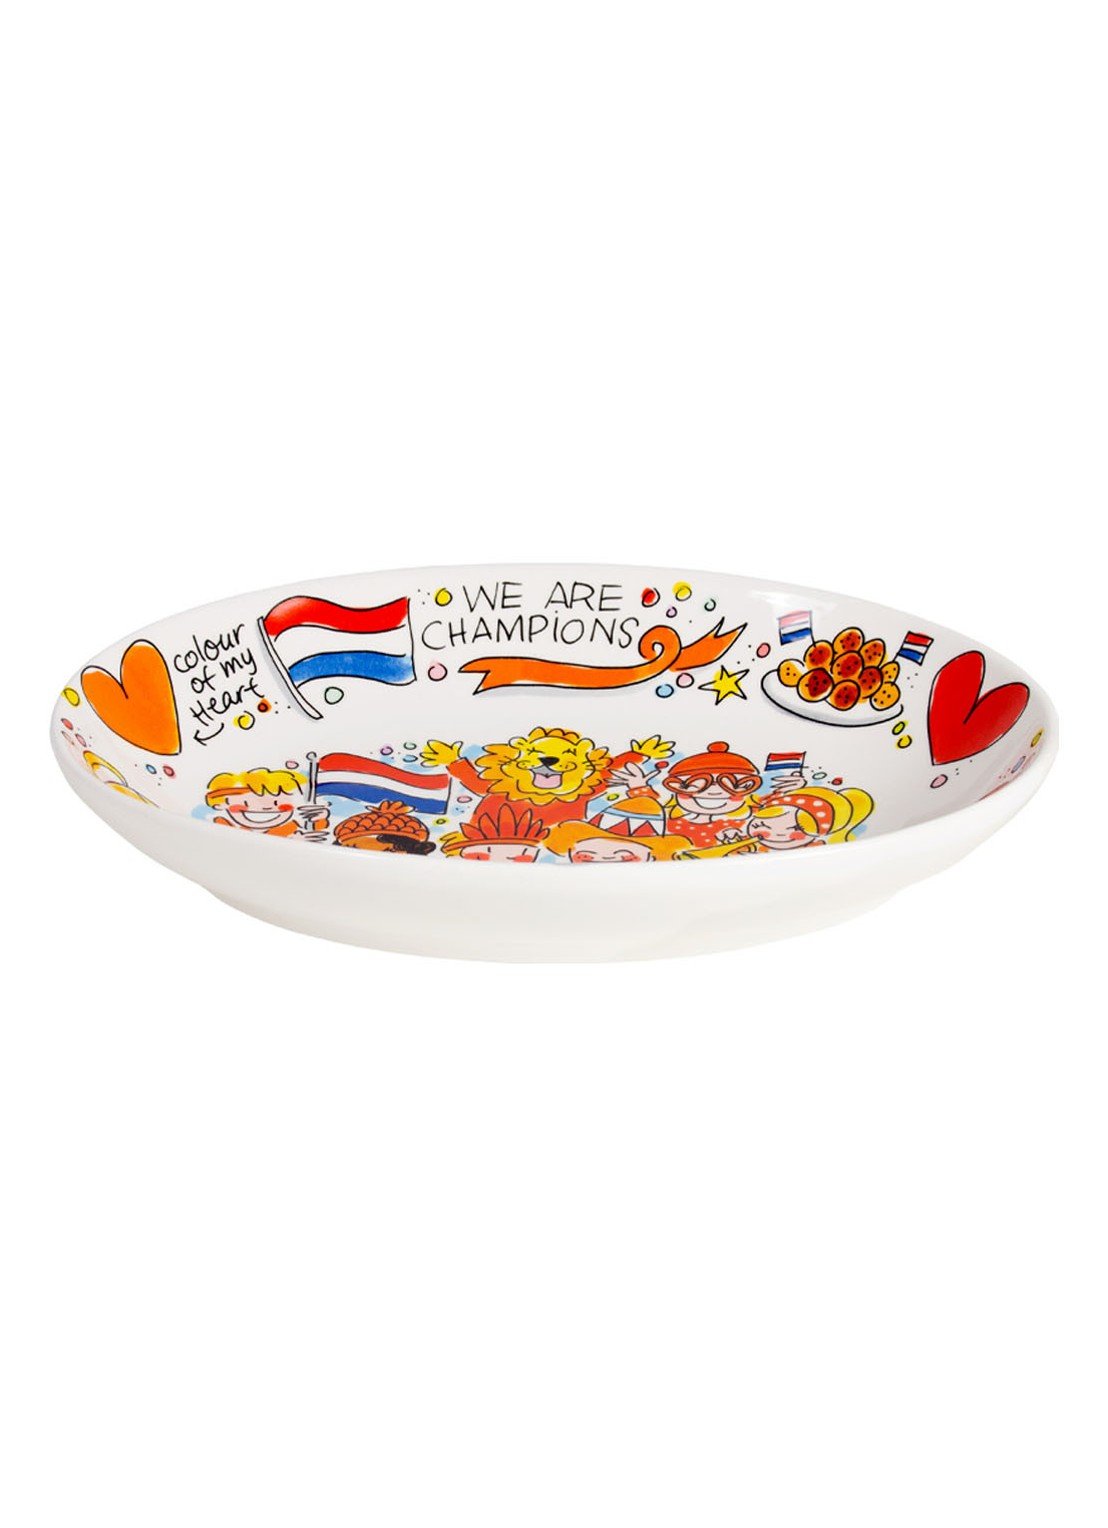 vooroordeel binnenplaats tafereel BLOND AMSTERDAM - Oranje serveerschaal 28,5 cm · Expo Enschede